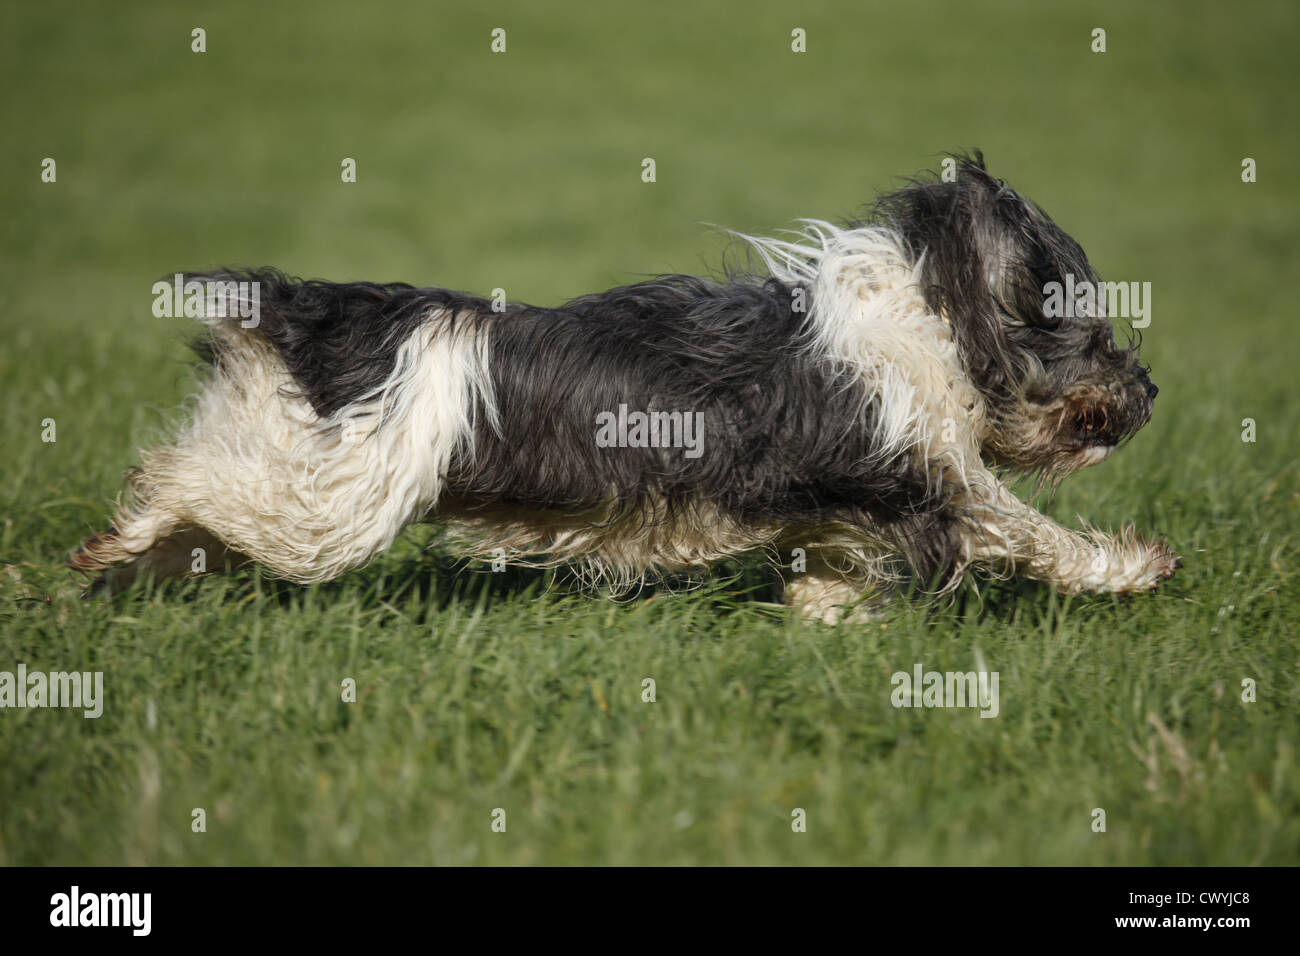 Polnischer Niederungshütehund / Polish lowland sheepdog Stock Photo